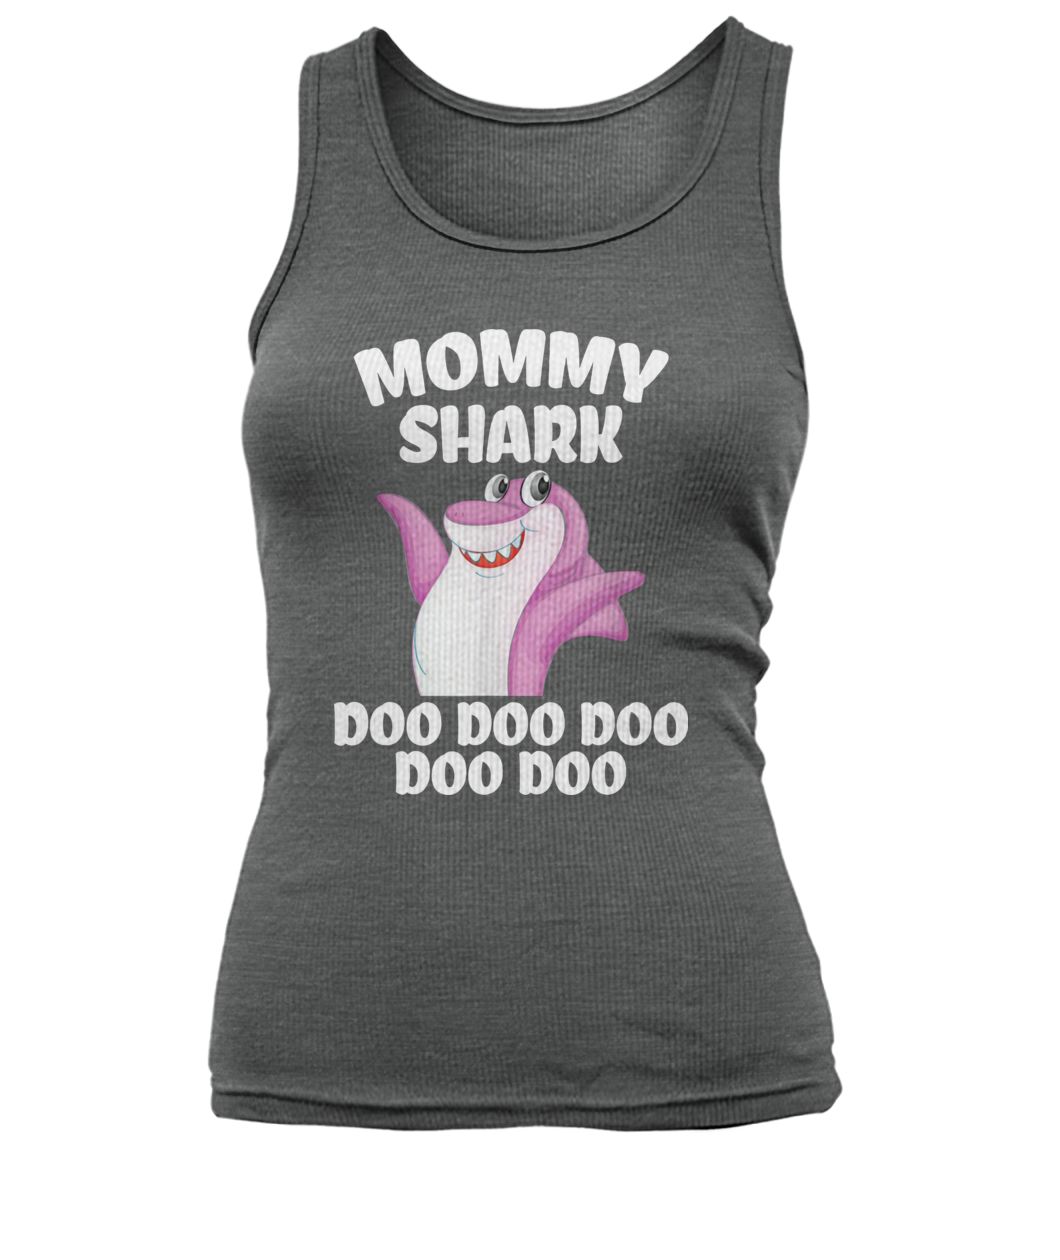 Mommy shark doo doo doo mother's day women's tank top